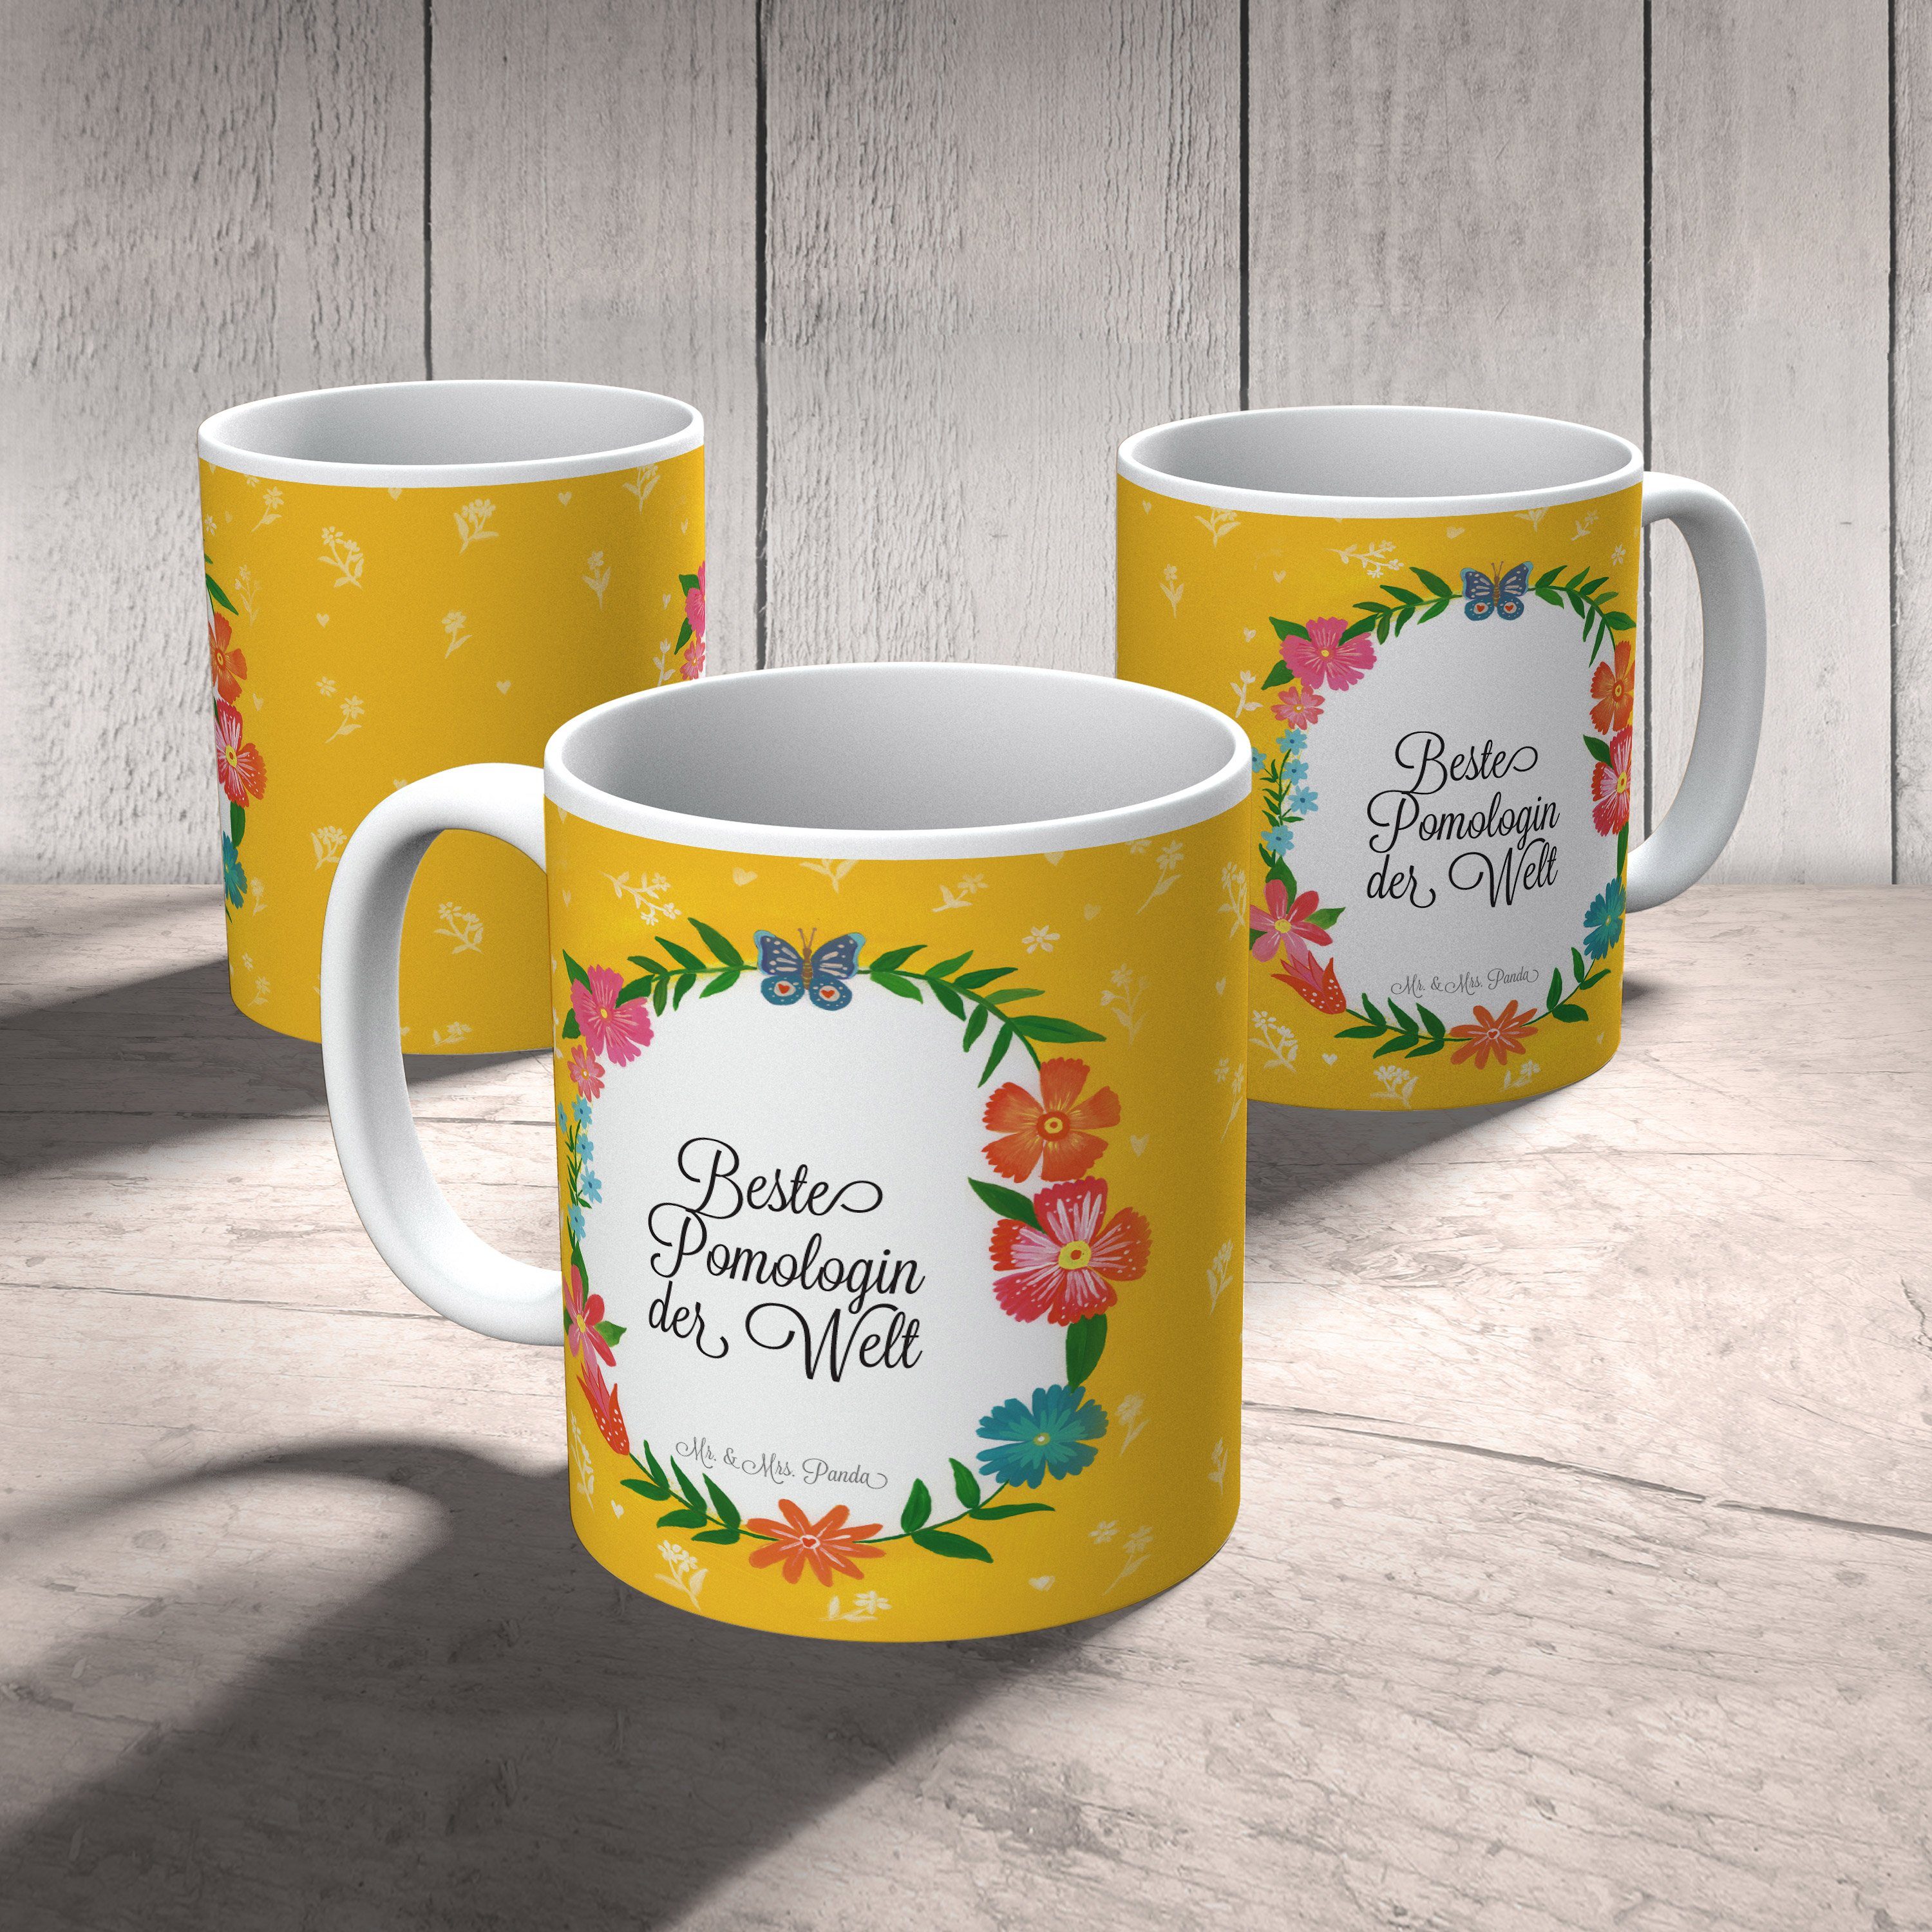 Mr. & Mrs. Panda Tasse Keramik Schenken, Büro Pomologin - Abschluss, Tasse, Geschenk, Kaffeebecher